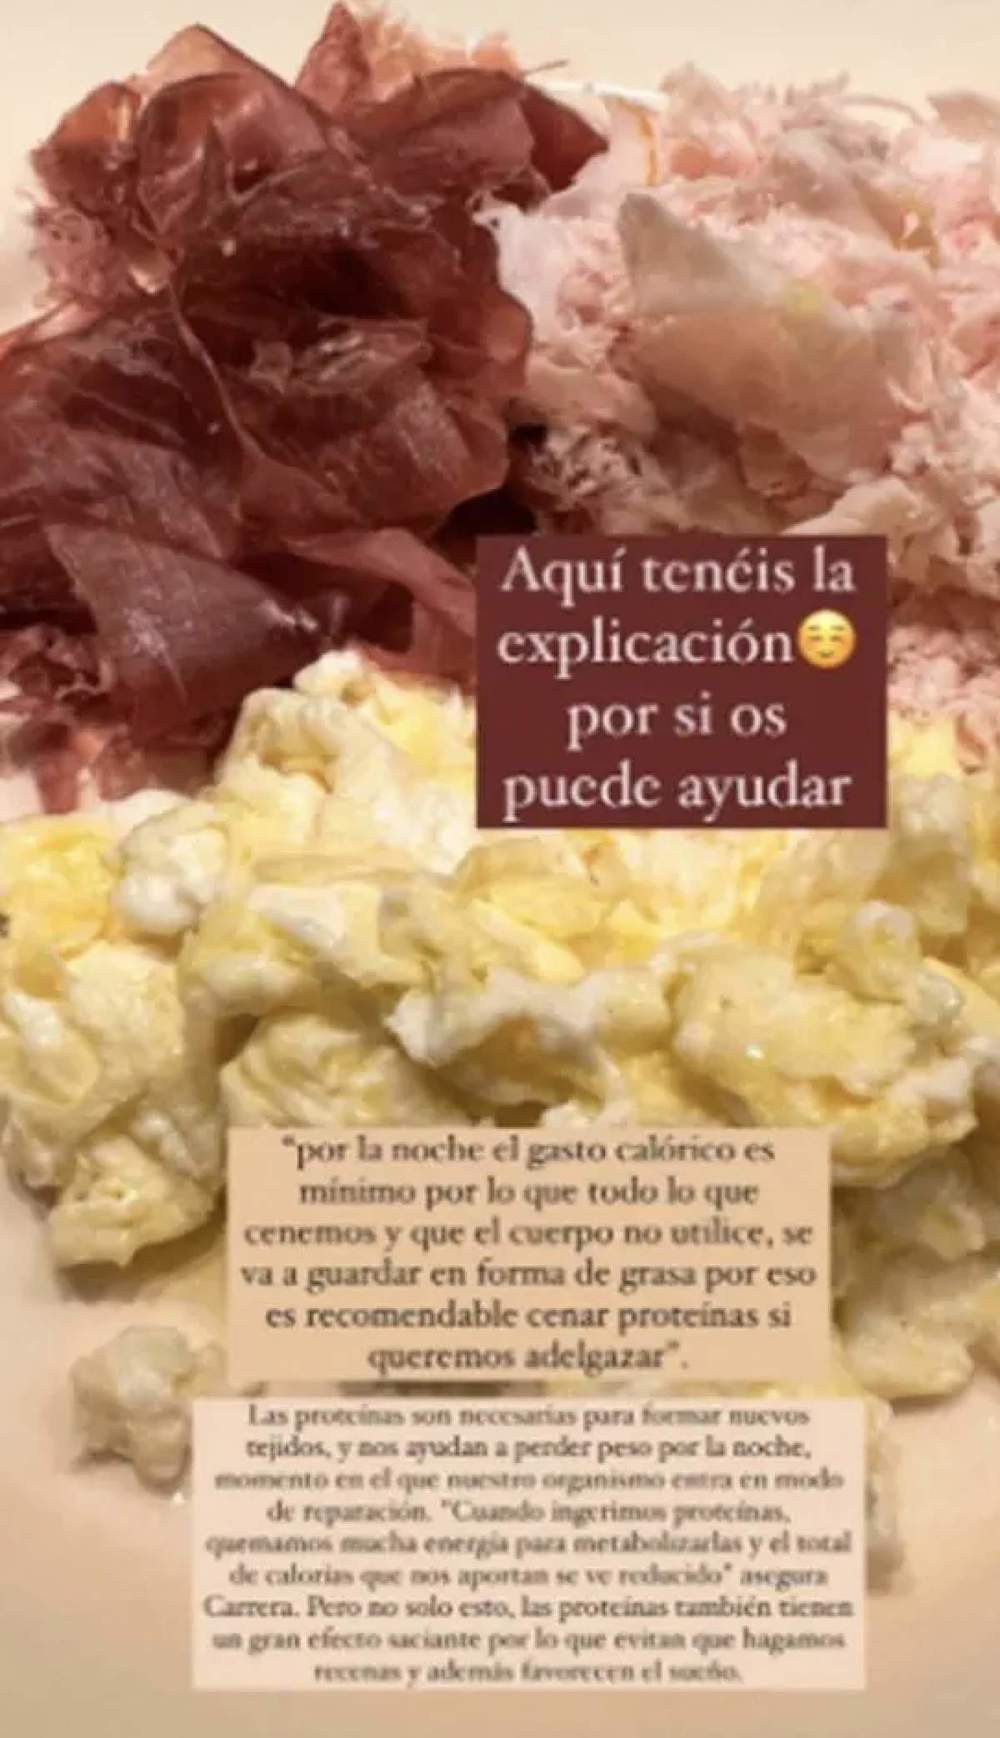 Esta es la cena alta en proteínas recomendada por Vicky Martín Berrocal